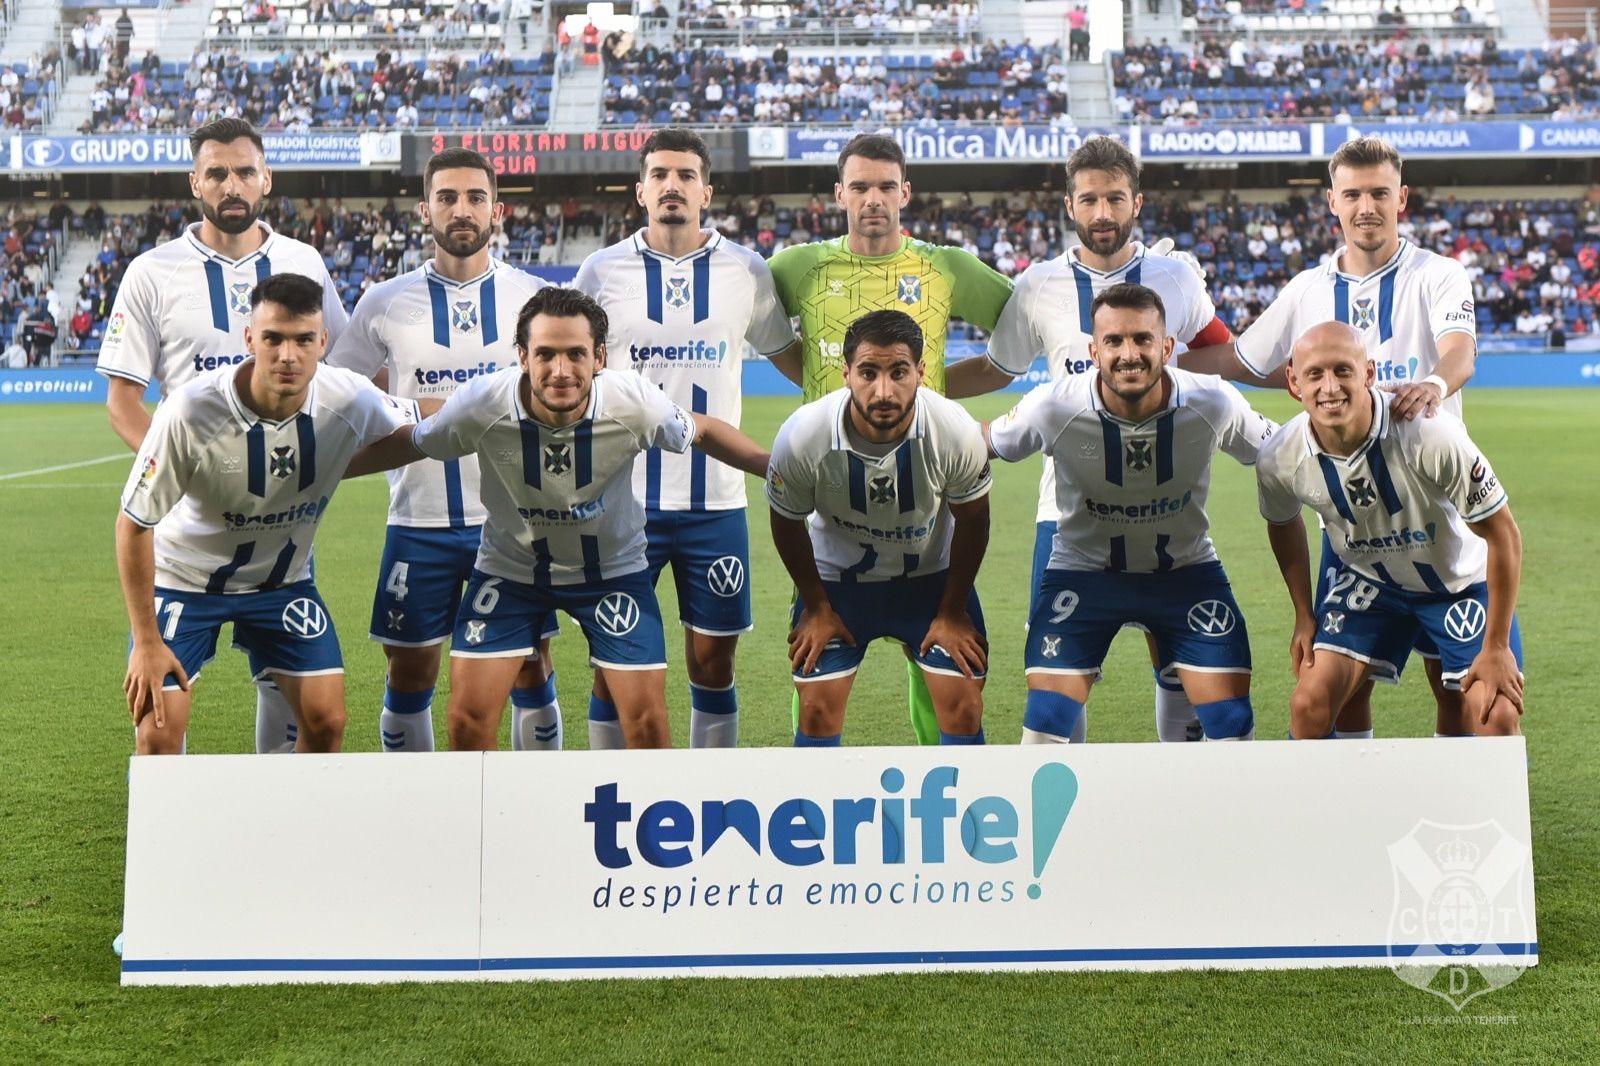 CD Tenerife – Resumen Temporada 2021-2022: A un solo paso del sueño